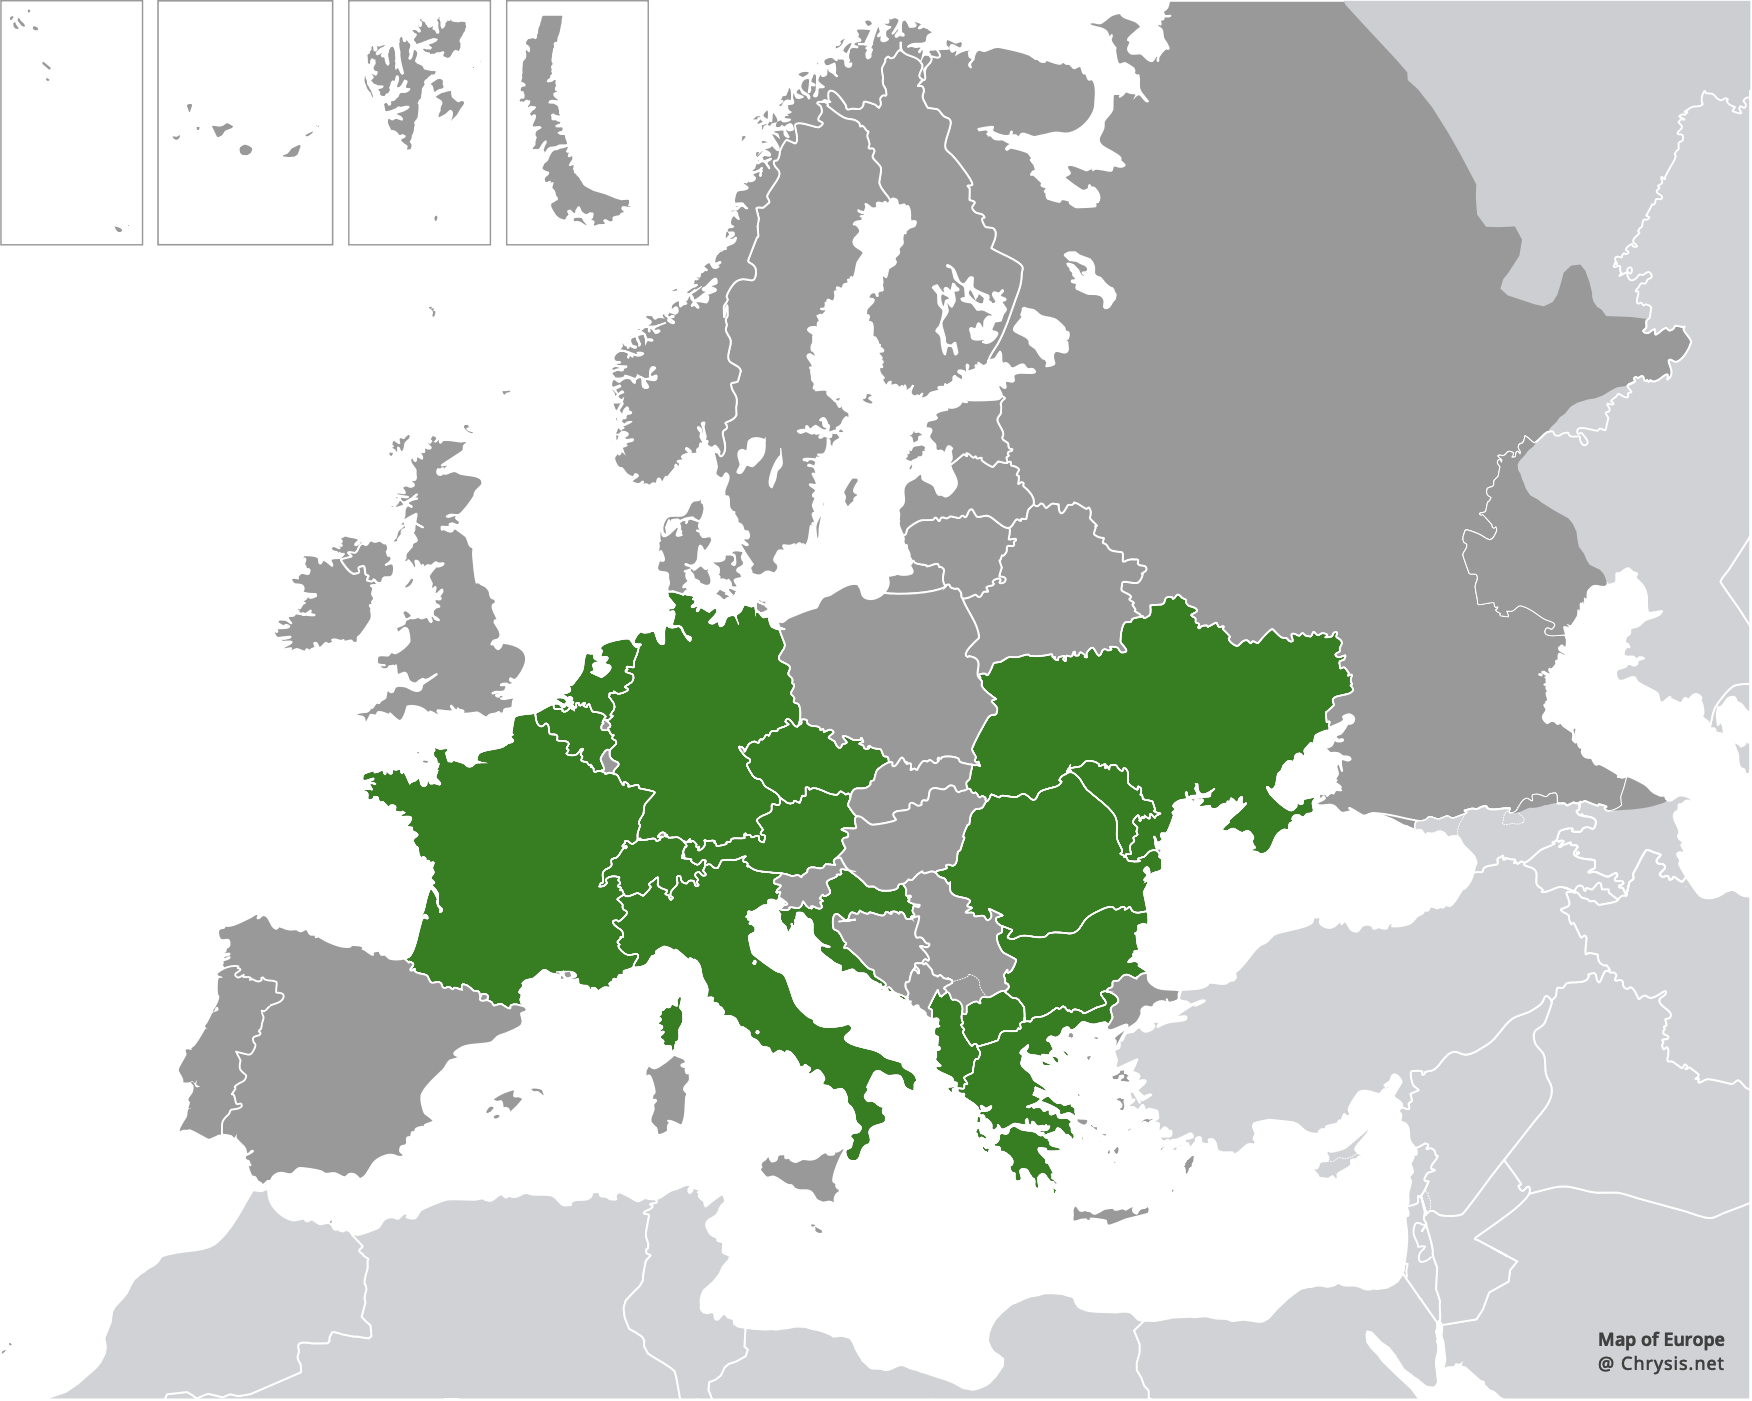 European distribution of Chrysis indigotea